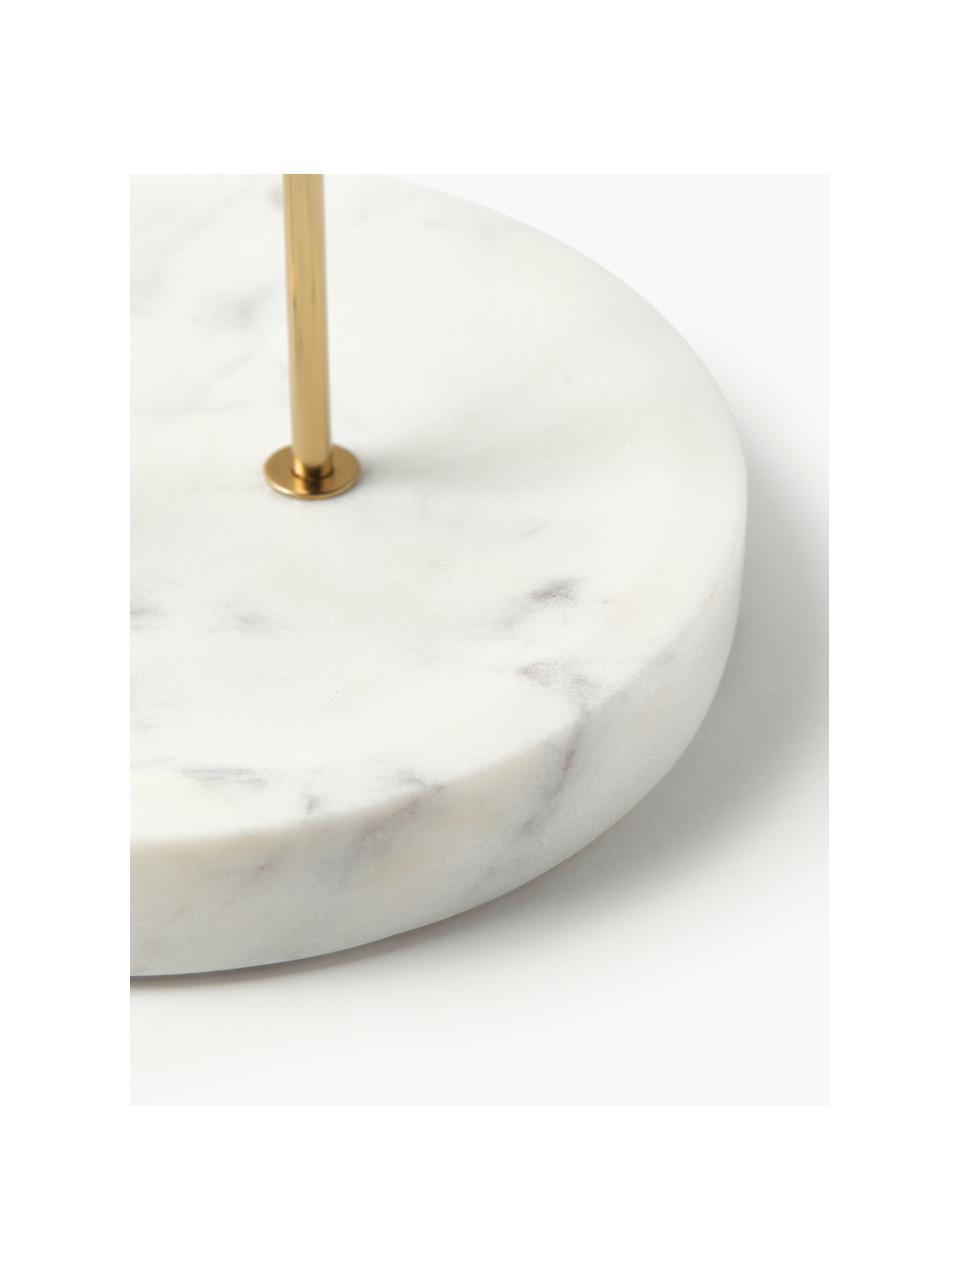 Schmuckhalter Selina mit Marmor-Sockel, Gestell: Metall, Sockel: Marmor, Weiß, marmoriert, Gold, B 20 x H 32 cm